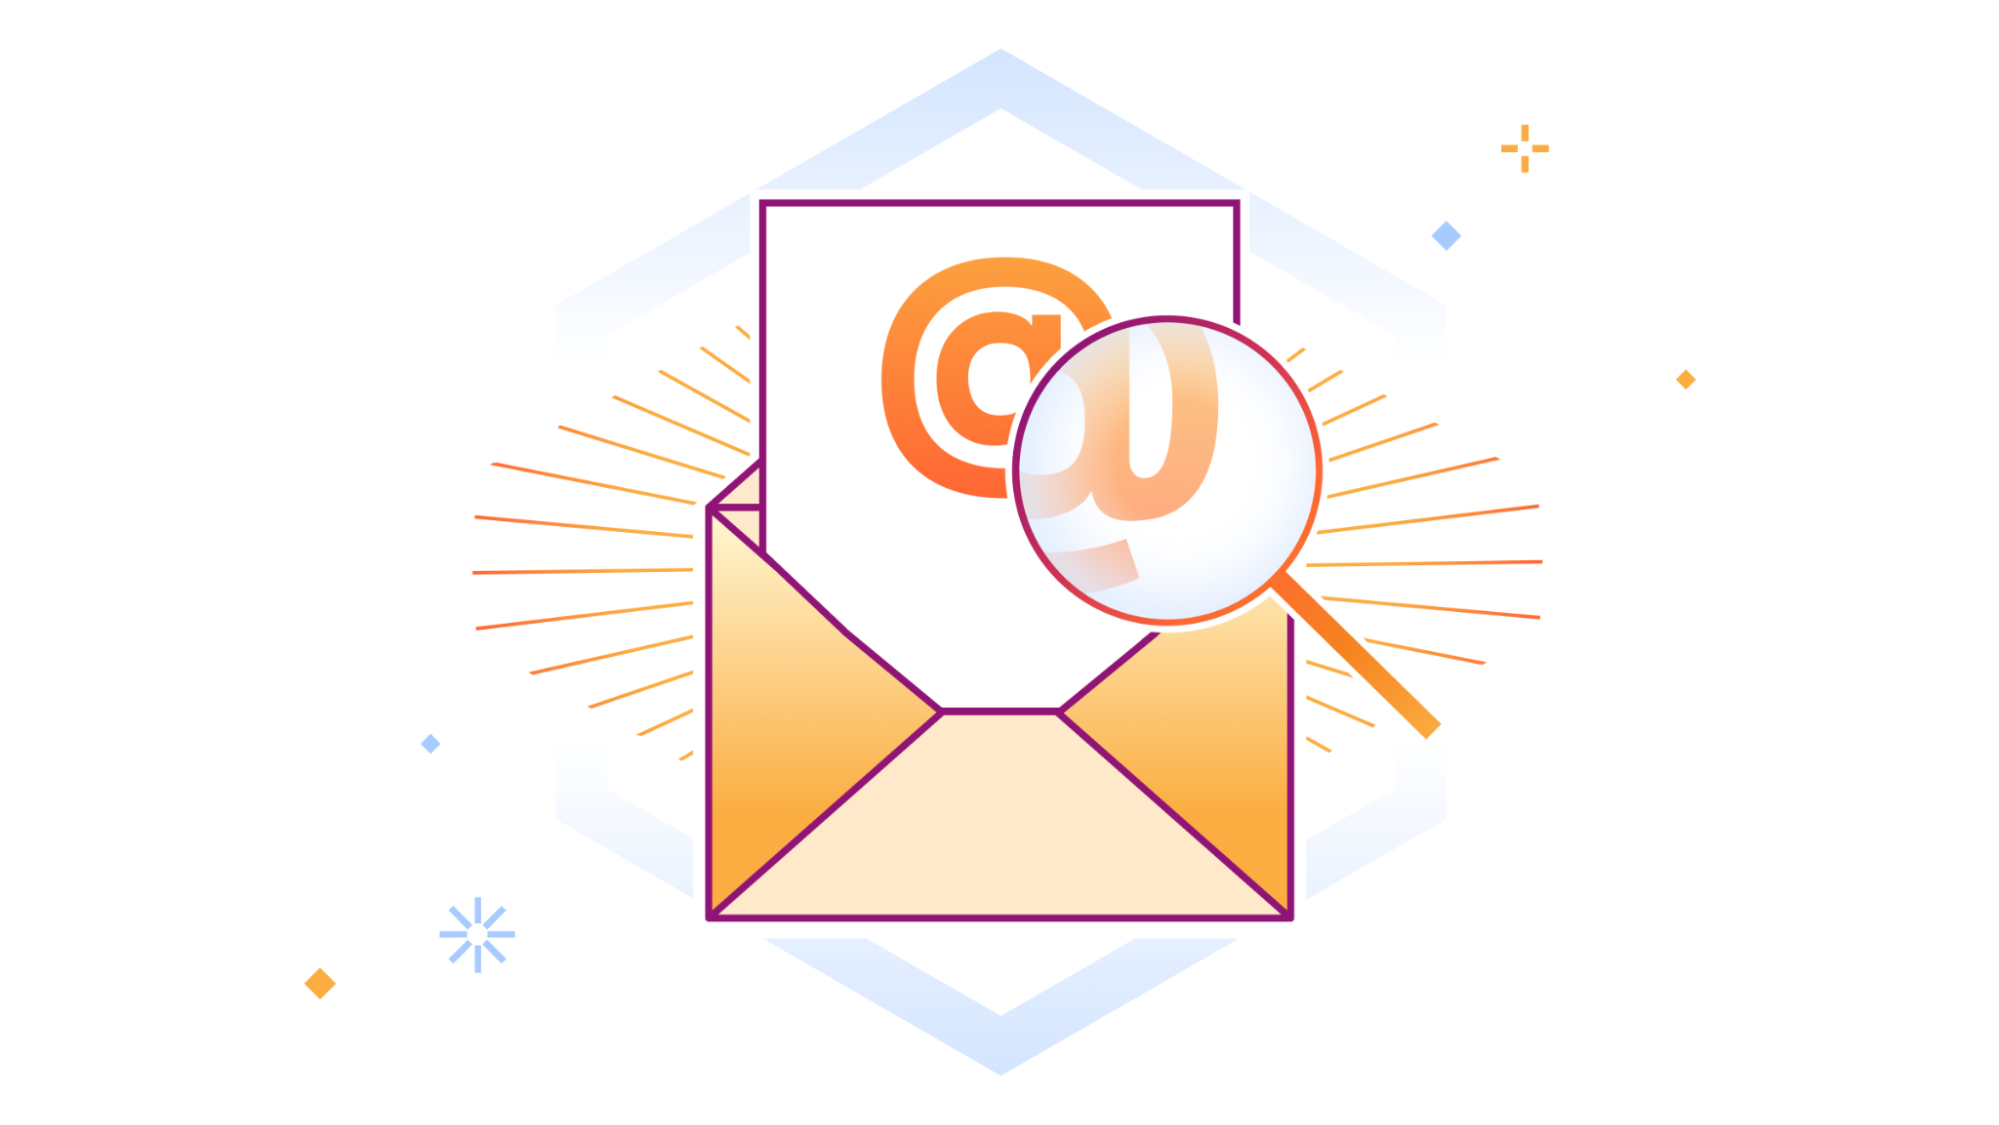 Sprawdź, jakie zagrożenia czają się w Twoich skrzynkach pocztowych usługi Office 365, korzystając ze skanowania wstecznego w narzędziu Cloudflare Email Retro Scan